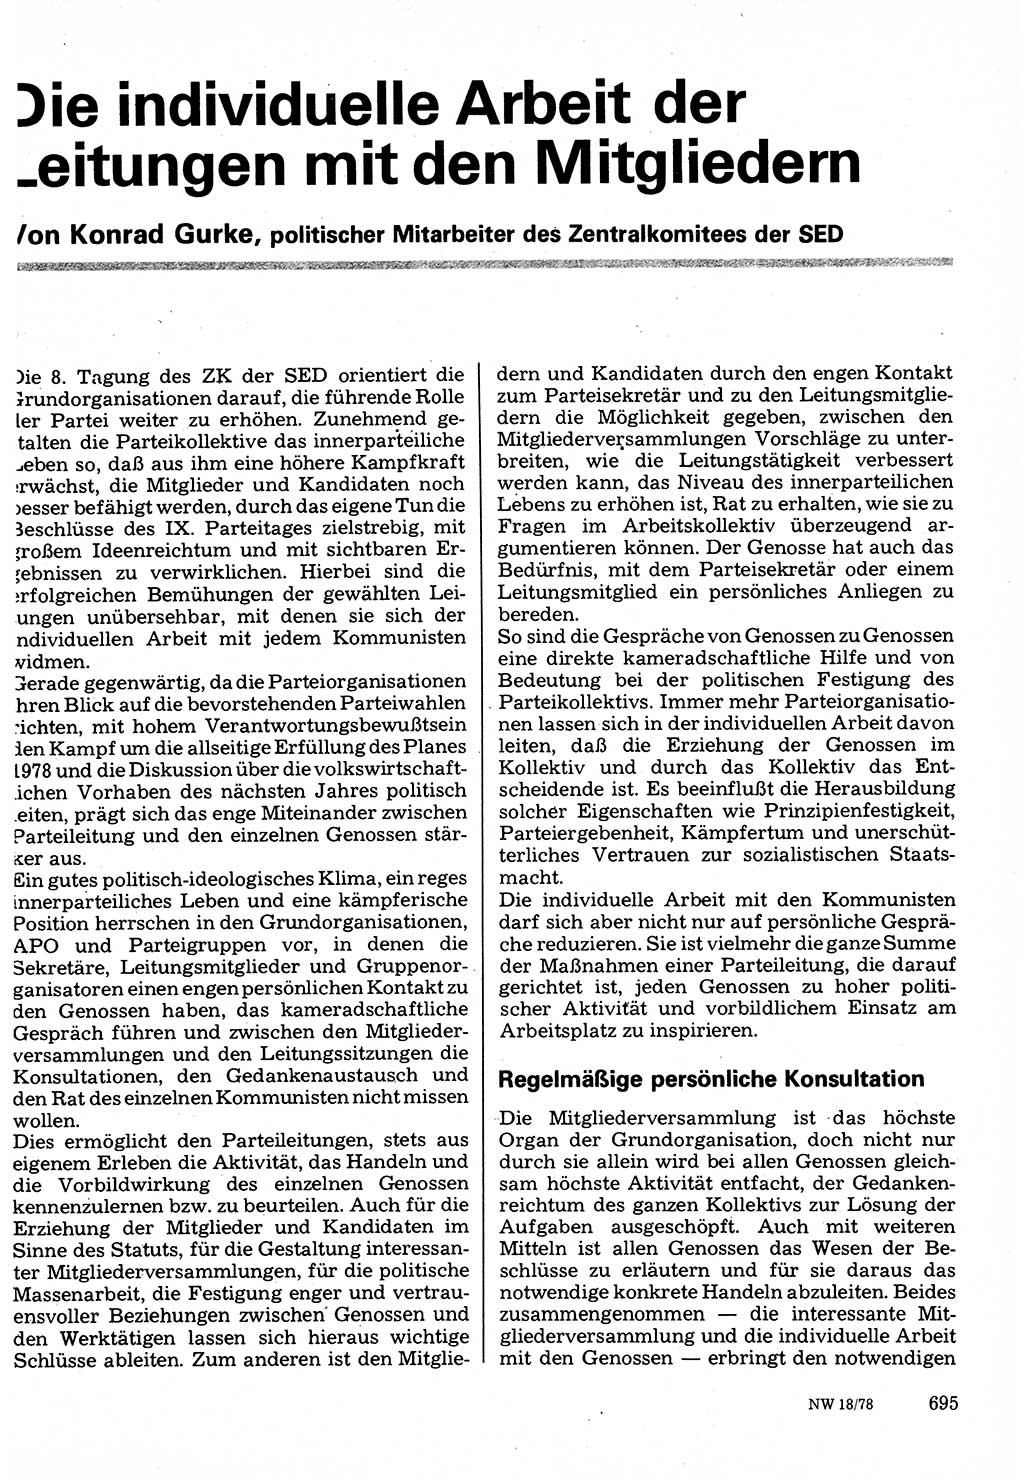 Neuer Weg (NW), Organ des Zentralkomitees (ZK) der SED (Sozialistische Einheitspartei Deutschlands) für Fragen des Parteilebens, 33. Jahrgang [Deutsche Demokratische Republik (DDR)] 1978, Seite 695 (NW ZK SED DDR 1978, S. 695)